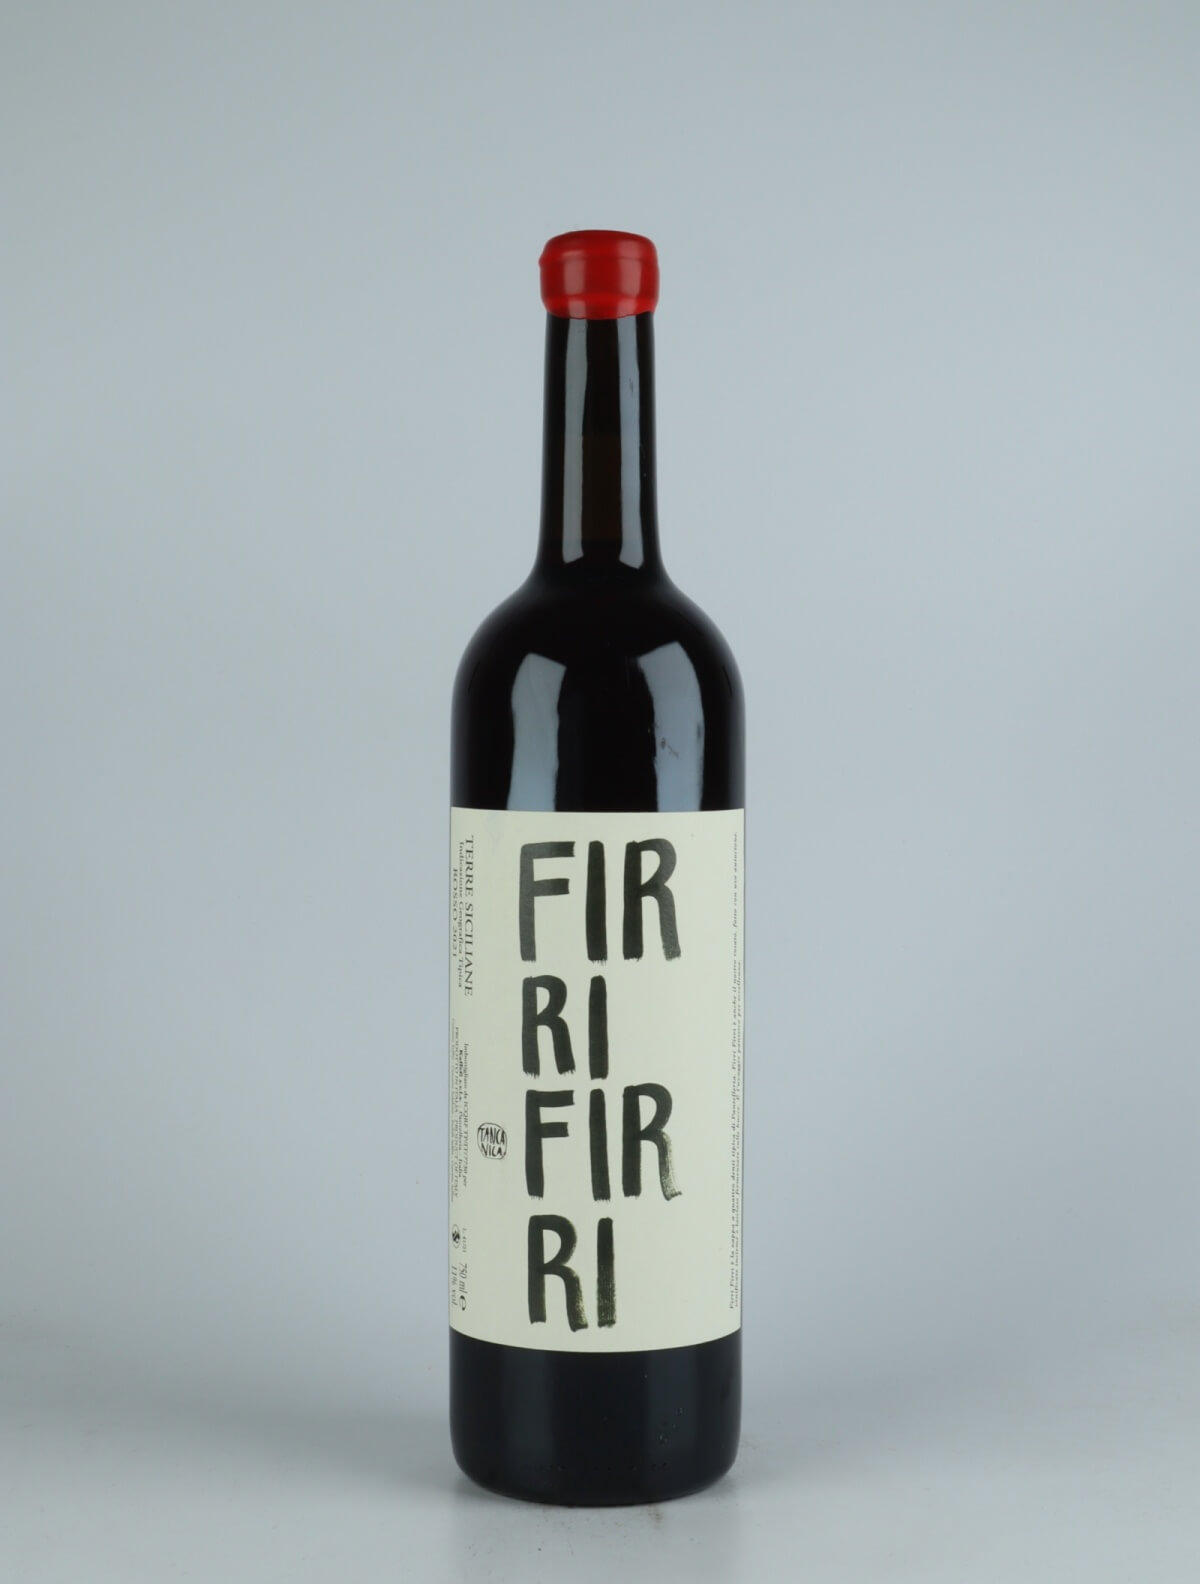 A bottle 2021 Firri Firri Rosé from Tanca Nica, Sicily in Italy